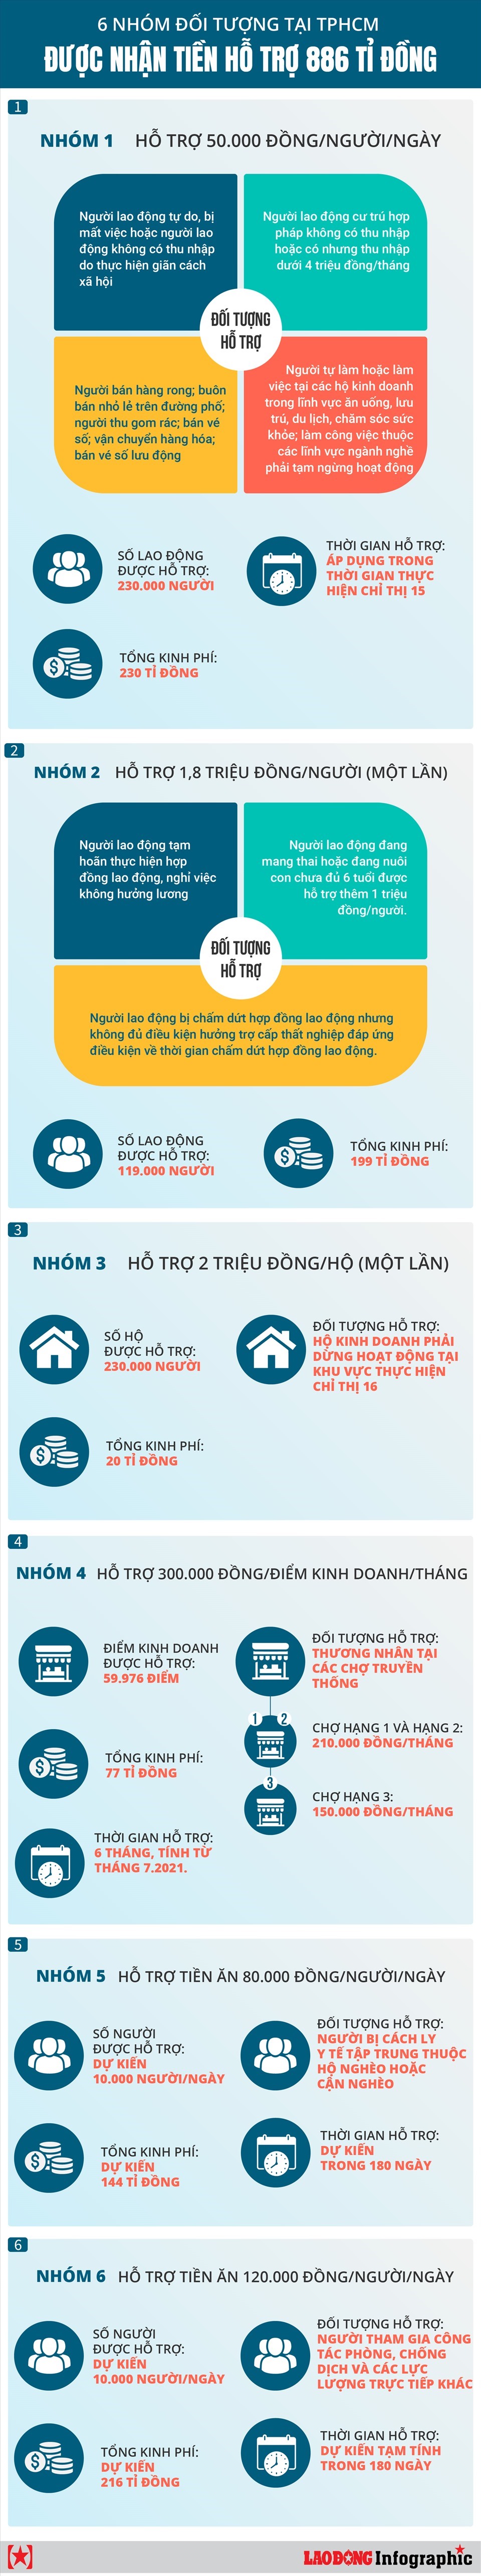 6 nhóm đối tượng tại TPHCM được nhận tiền hỗ trợ 886 tỉ đồng. Infographic: MINH QUÂN - NHẬT HUY